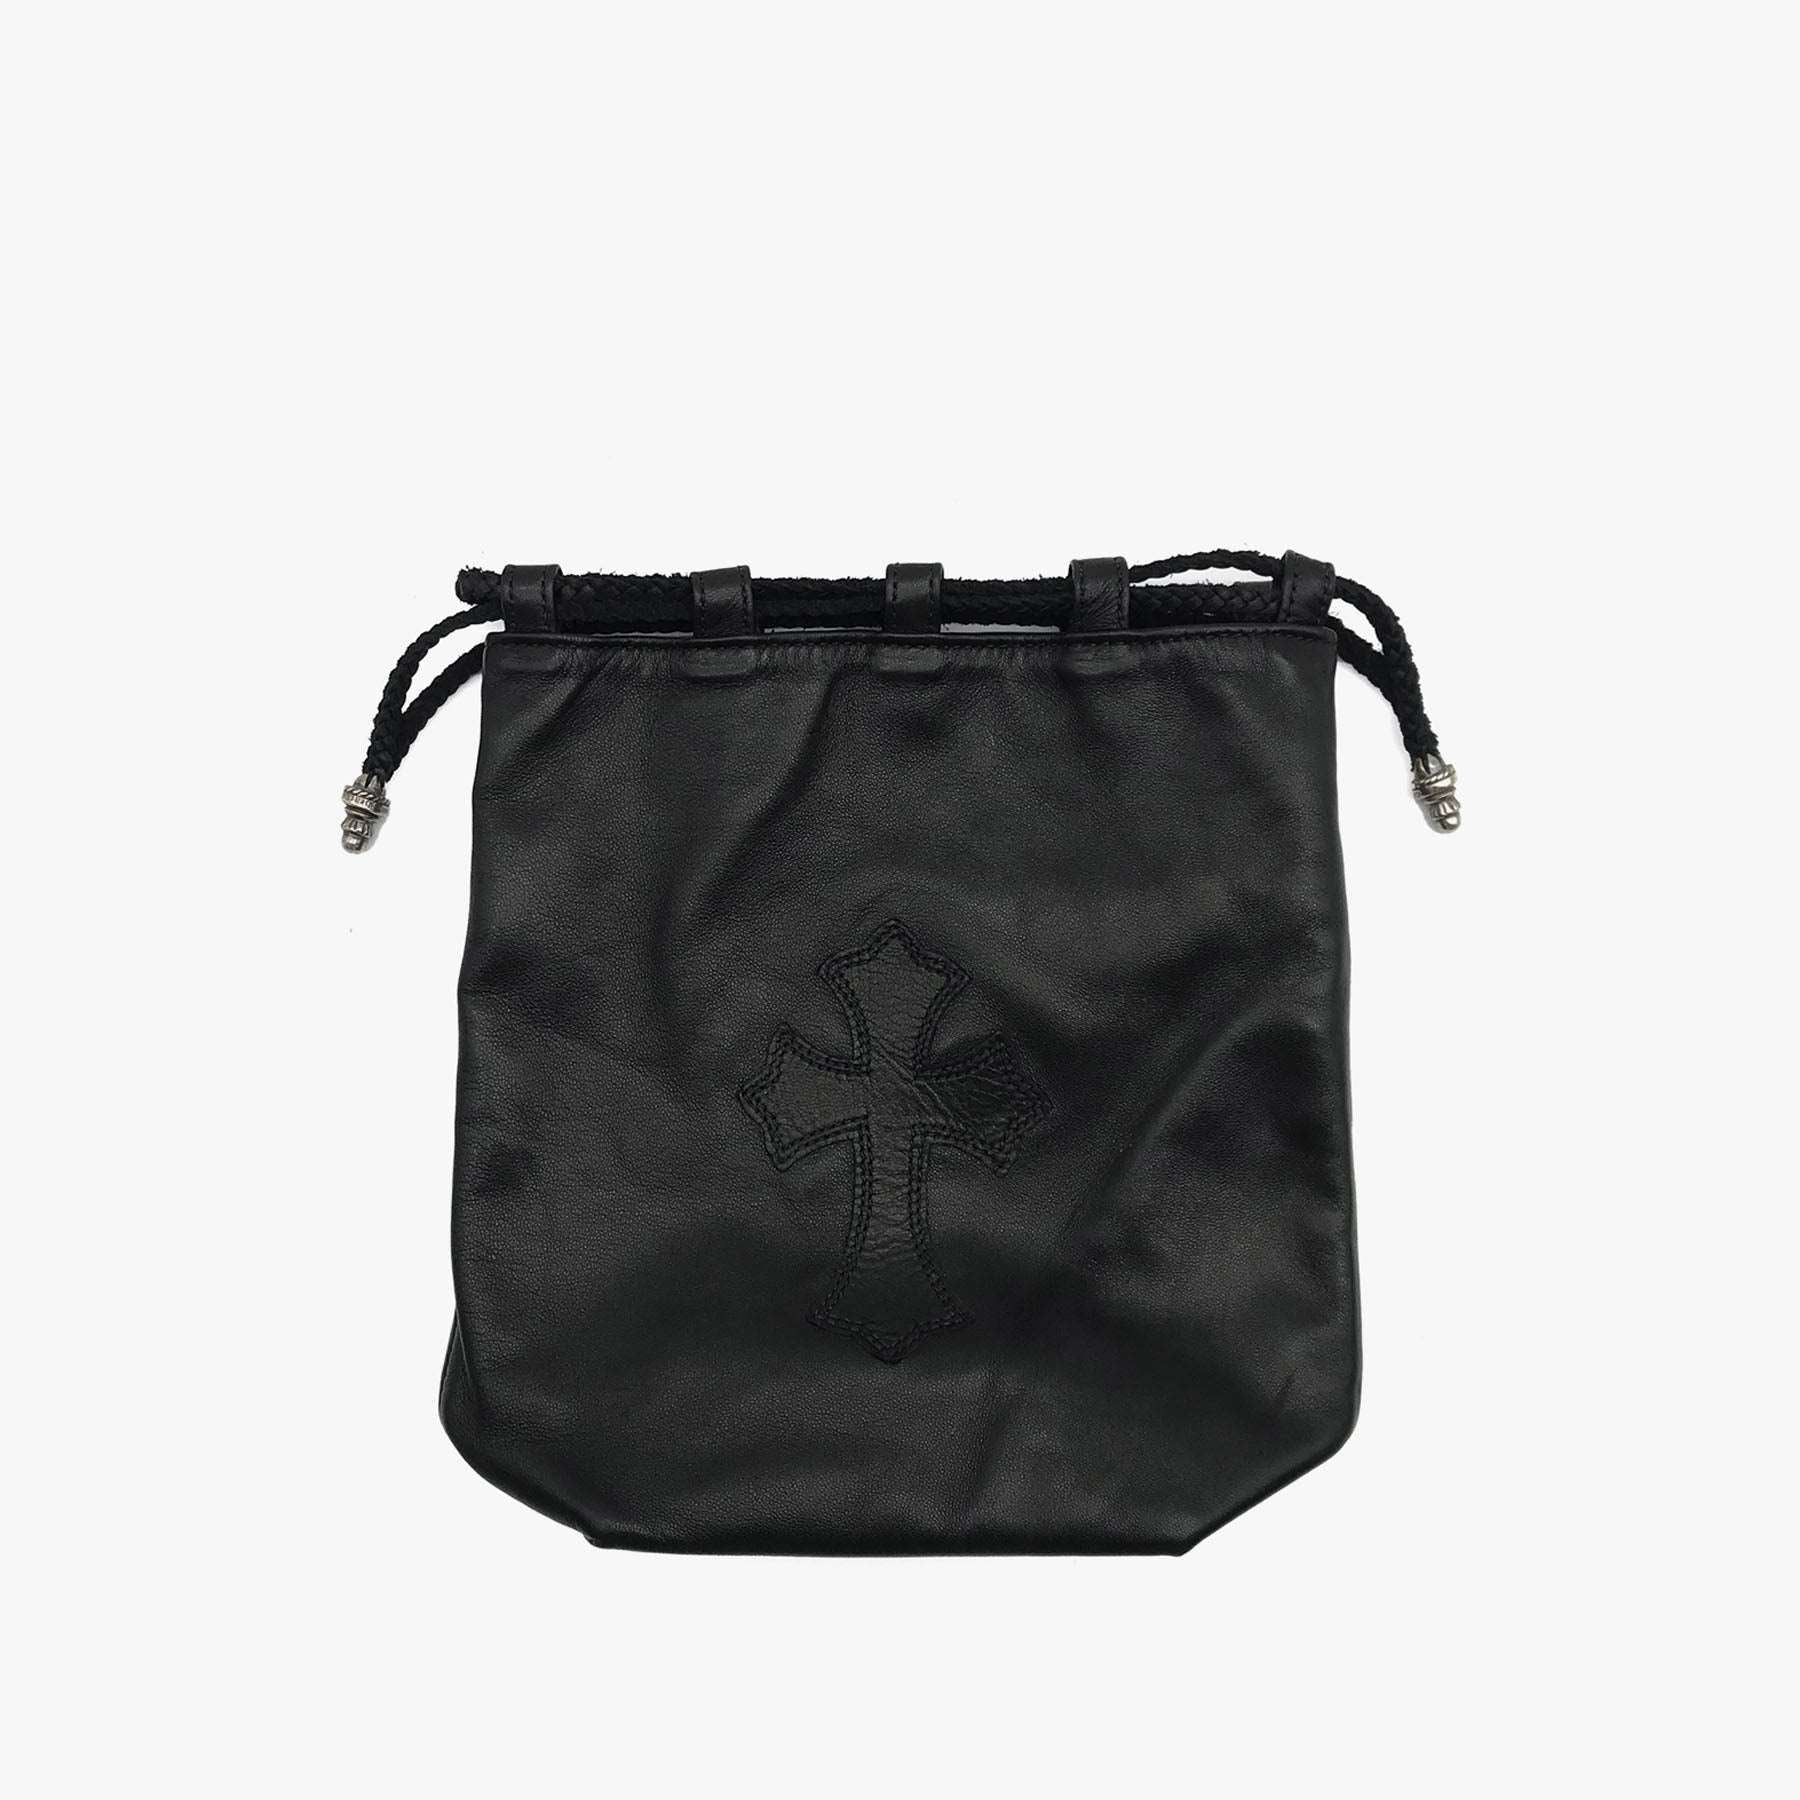 Chrome Hearts Black Mini Bucket Bag - SHENGLI ROAD MARKET